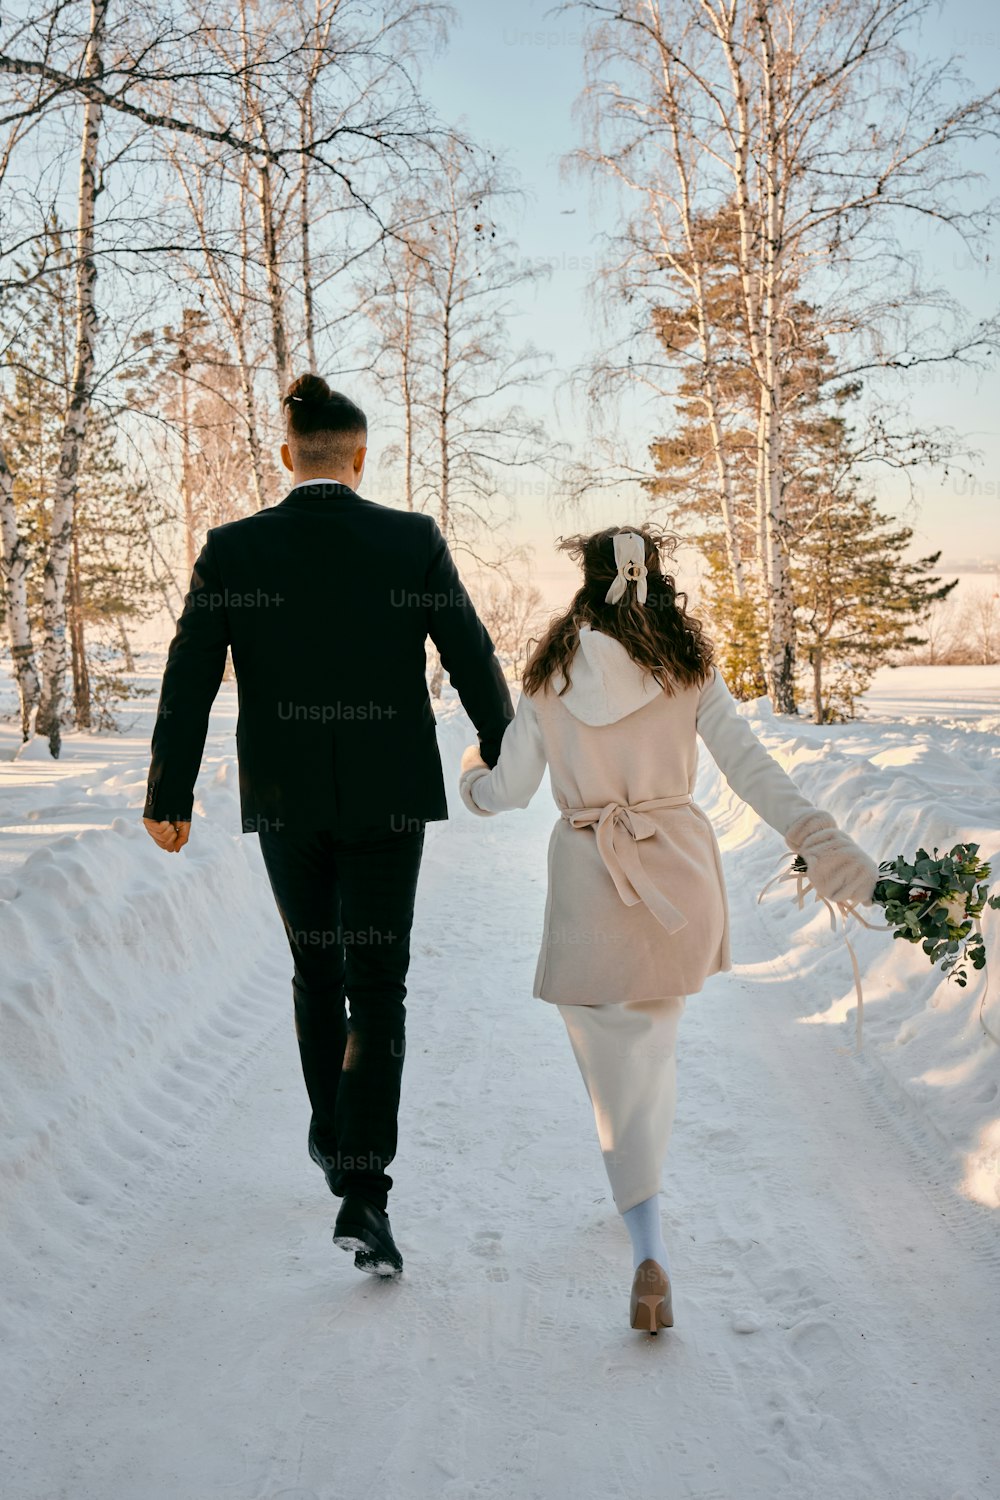 Un hombre y una mujer caminando en la nieve tomados de la mano